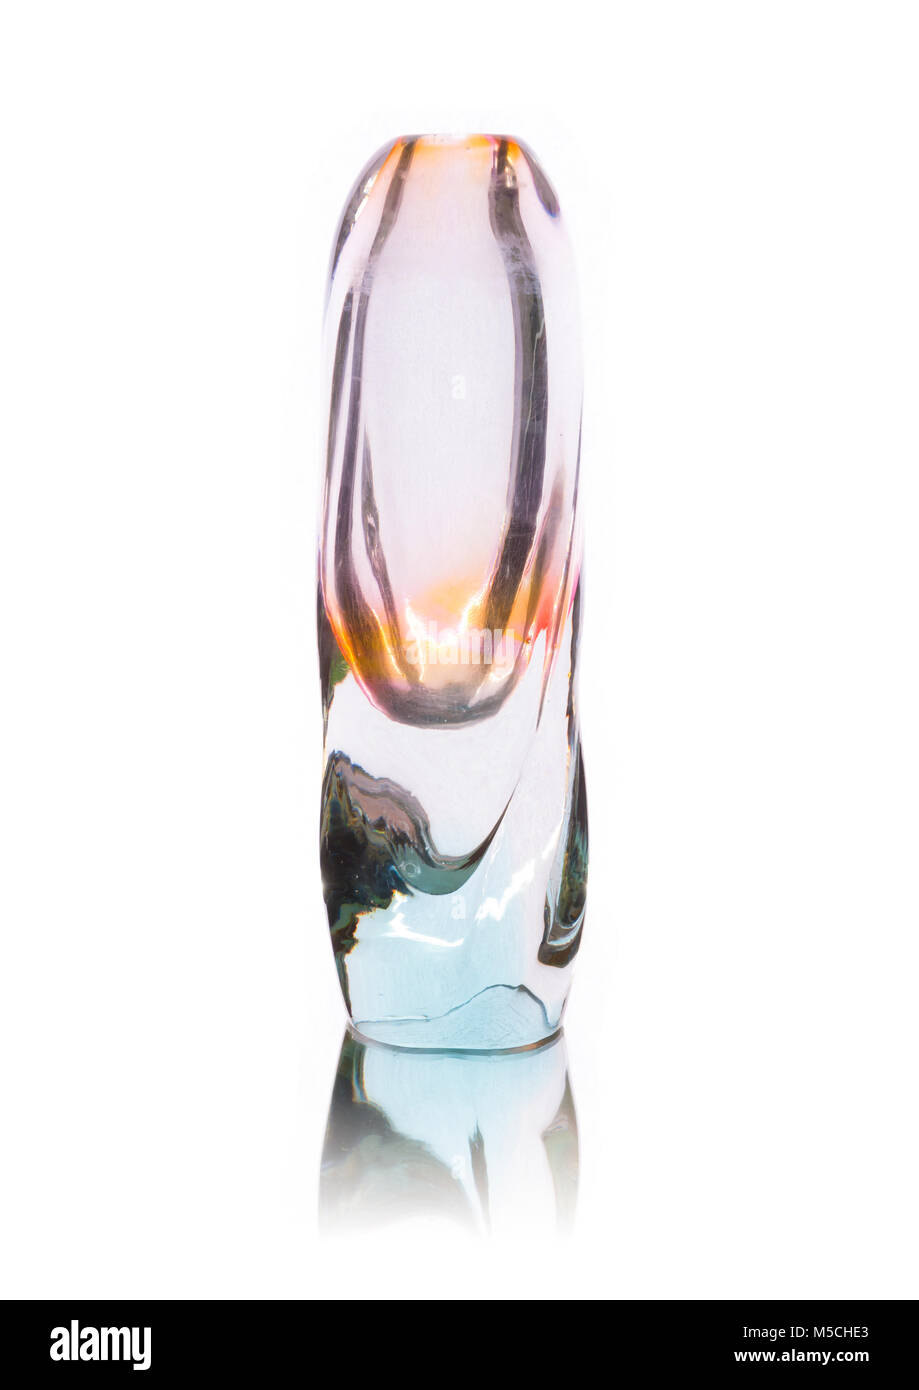 Vintage glass vase isolated on white background Stock Photo